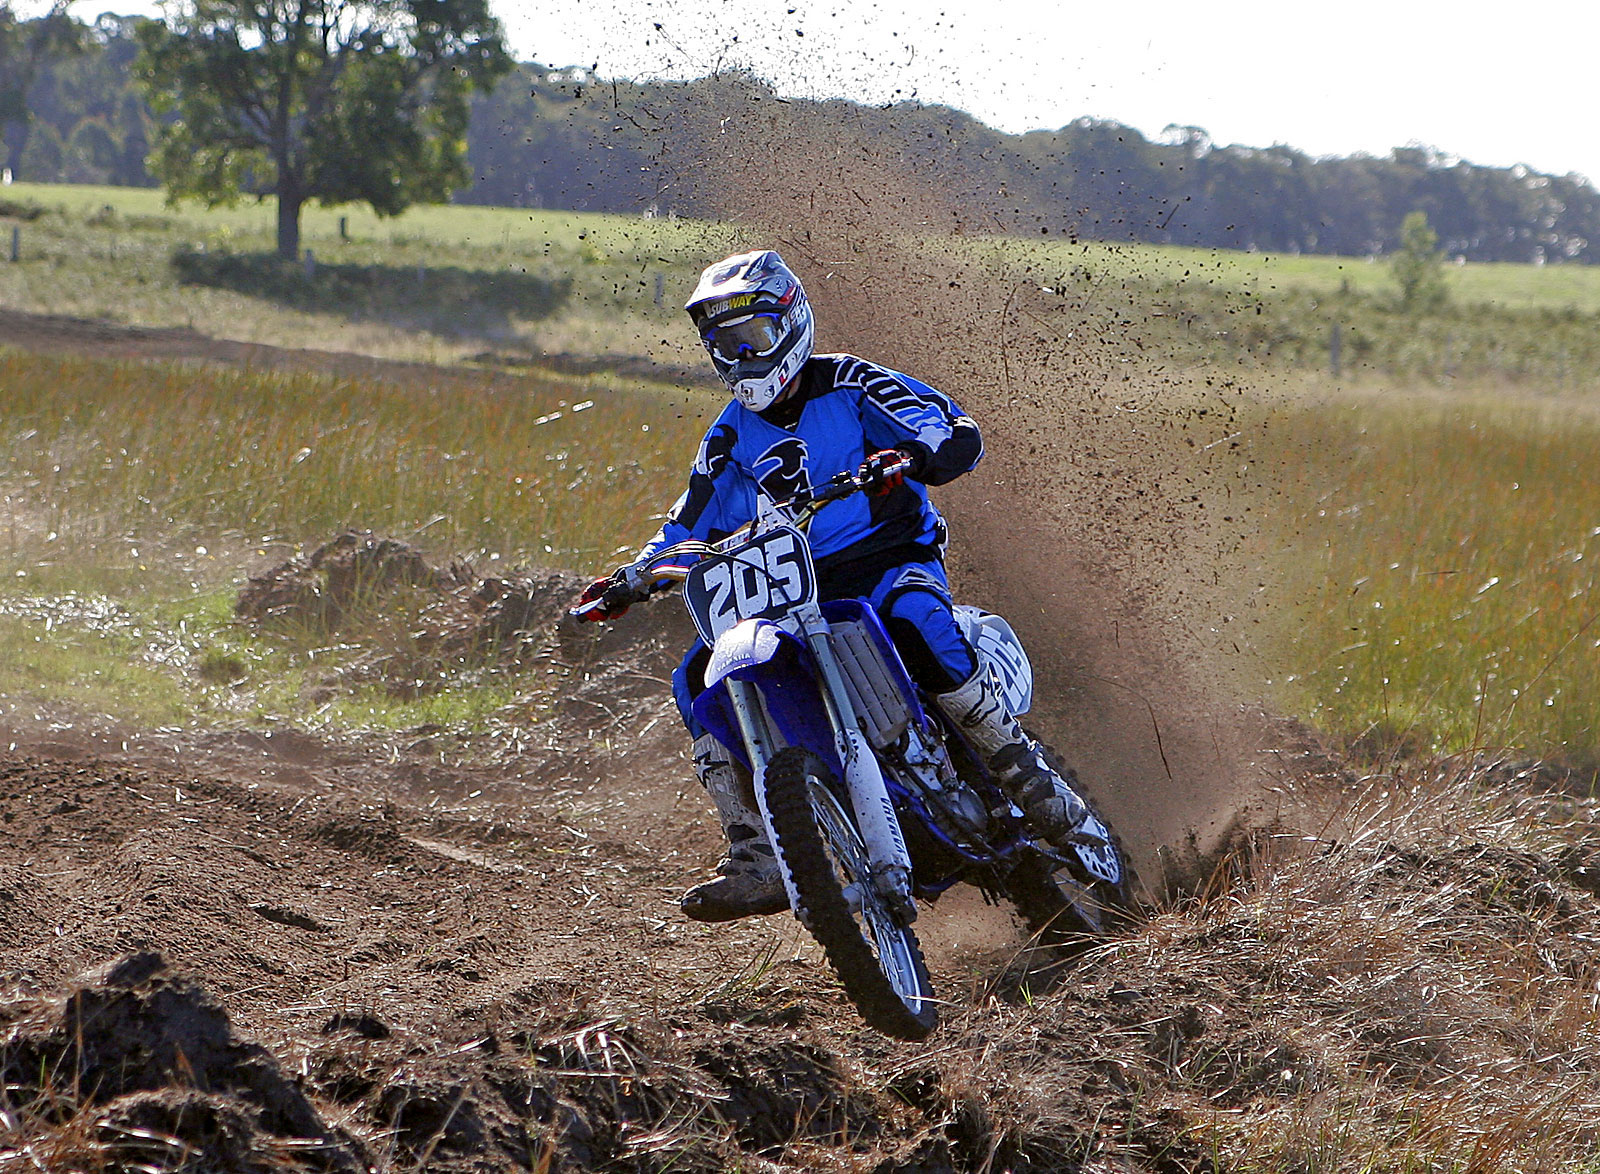 dirt bike racing images download